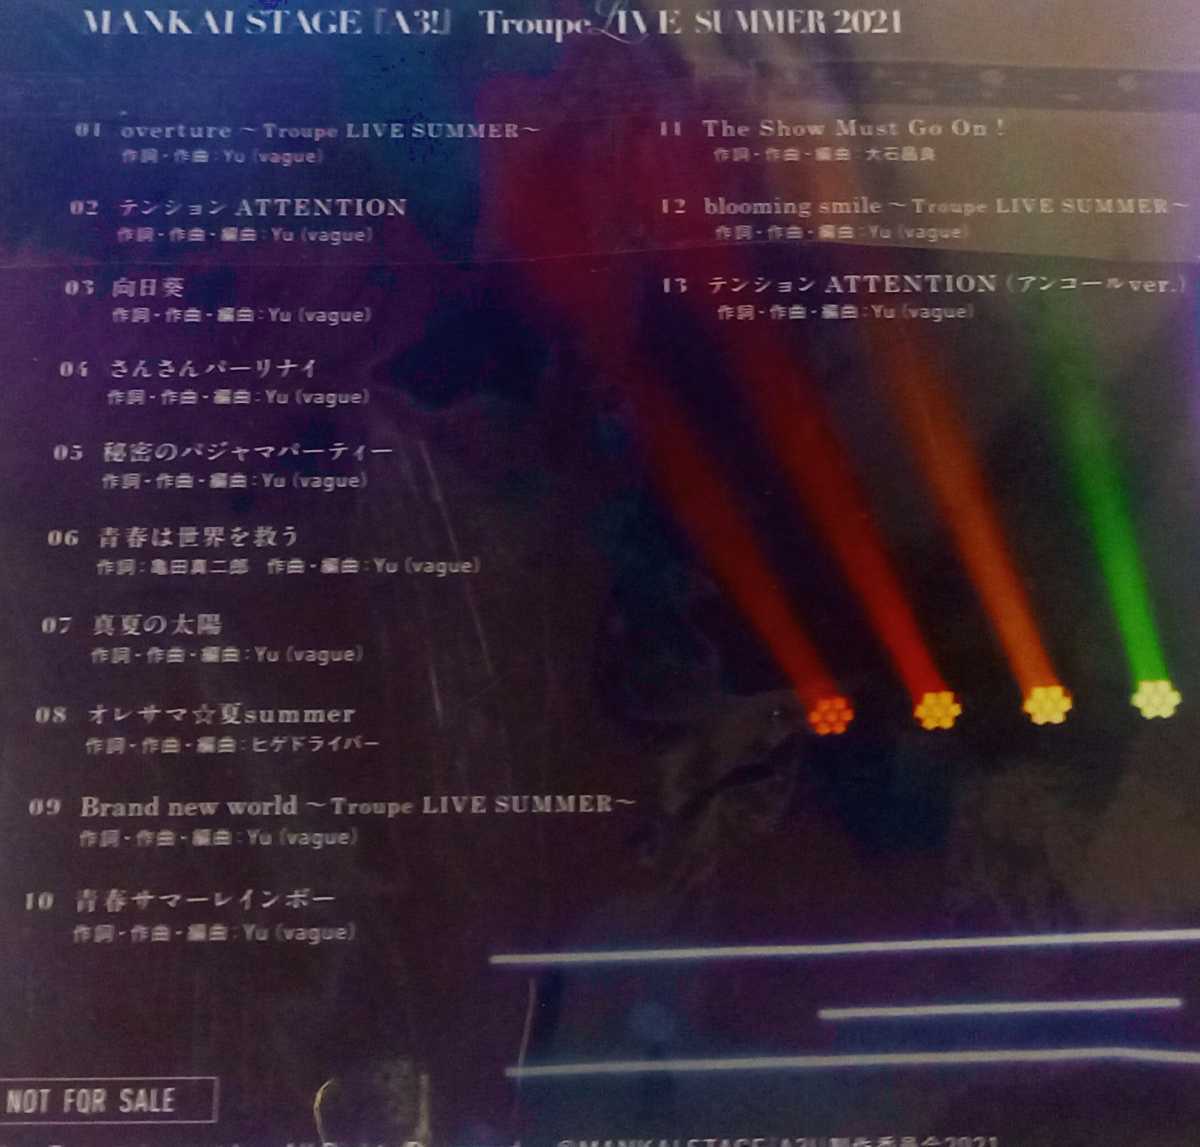 【非売品】 MANKAI STAGE 『A3!』 Troupe LIVE SUMMER 2021 CD 【状態良好】 アフターパンフレット 限定版同梱特典Live CD [同梱可能]_画像3